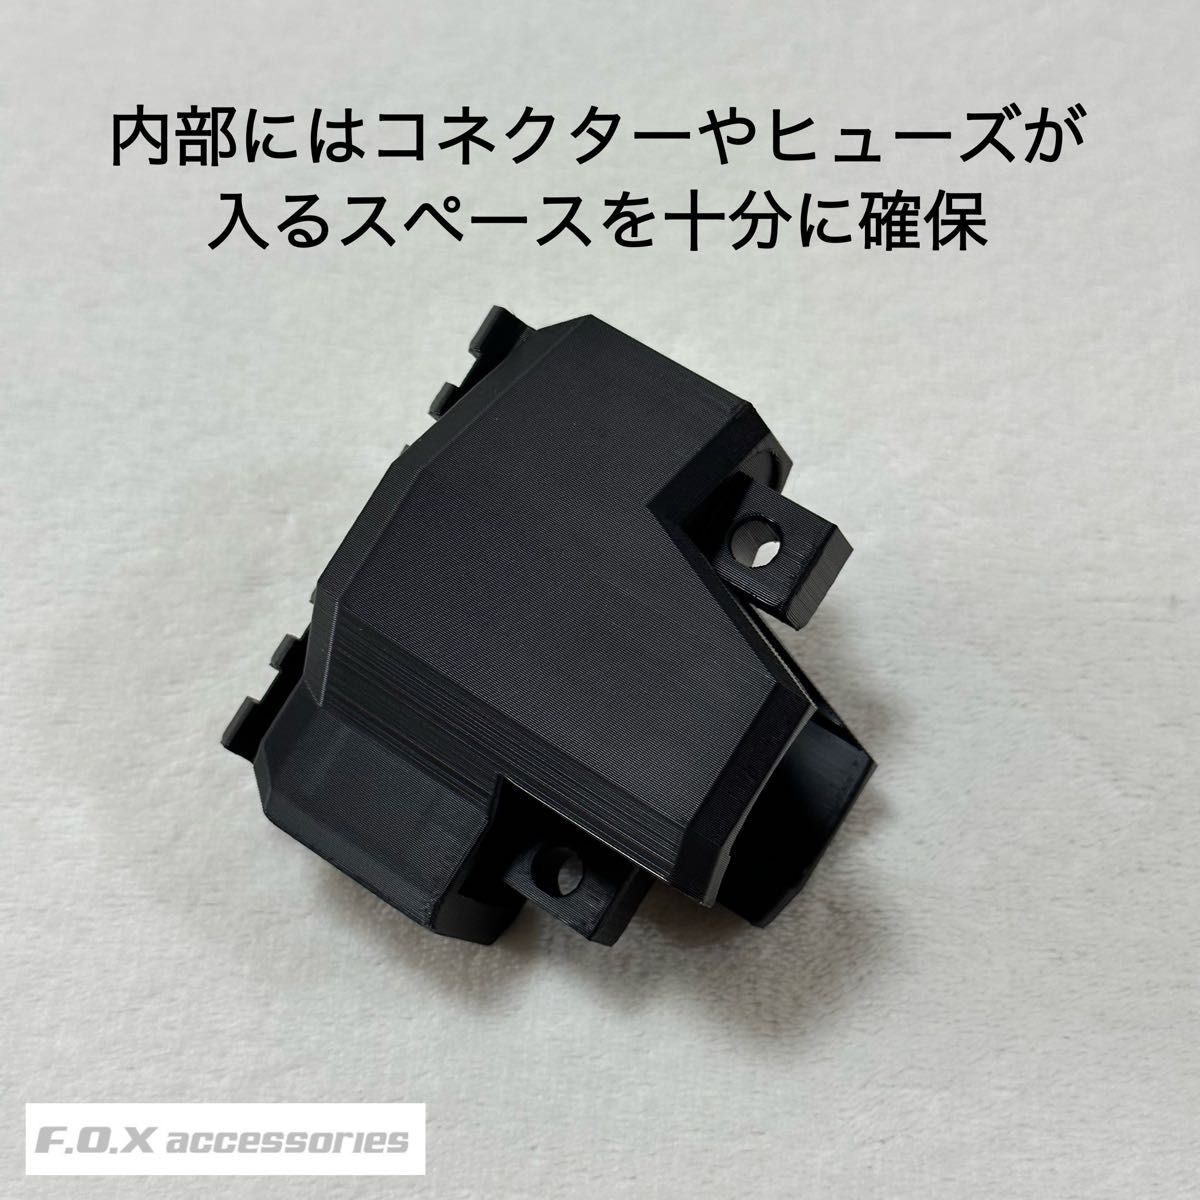 東京マルイ MP5K HC 20mmピカティニーストックベース